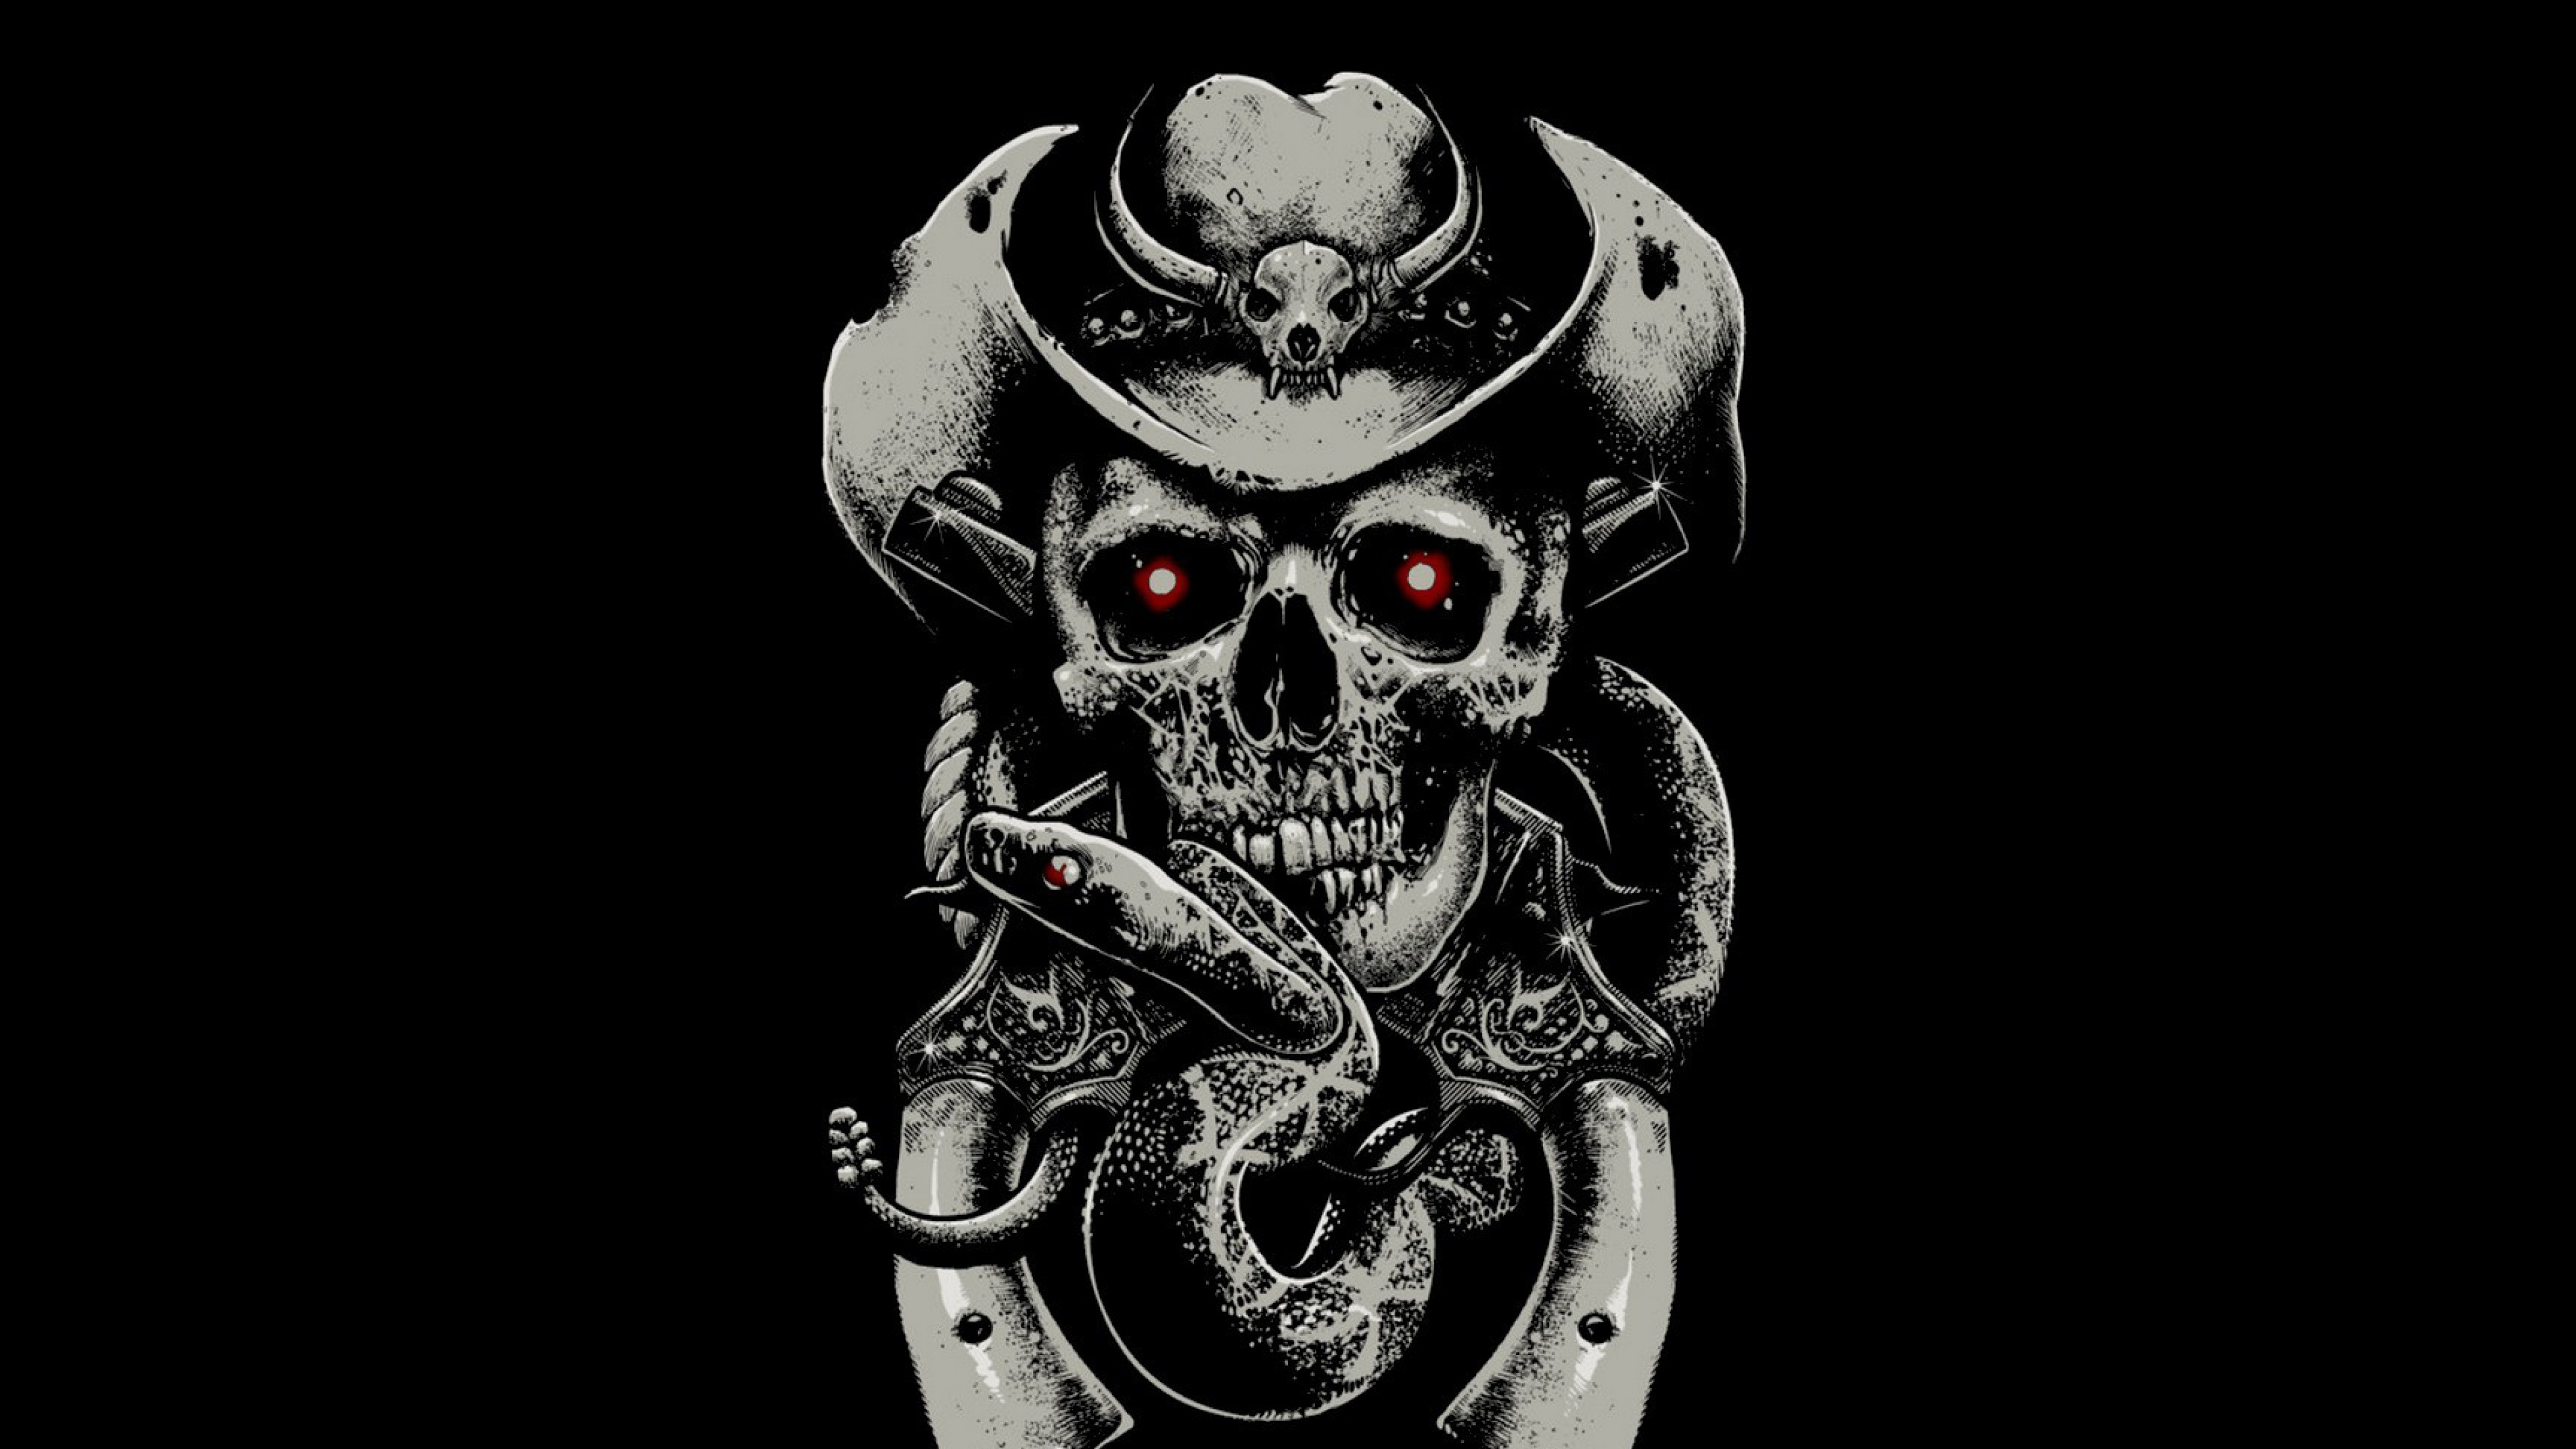 Skull, Illustration, Bone, Black and White. Wallpaper in 3840x2160 Resolution